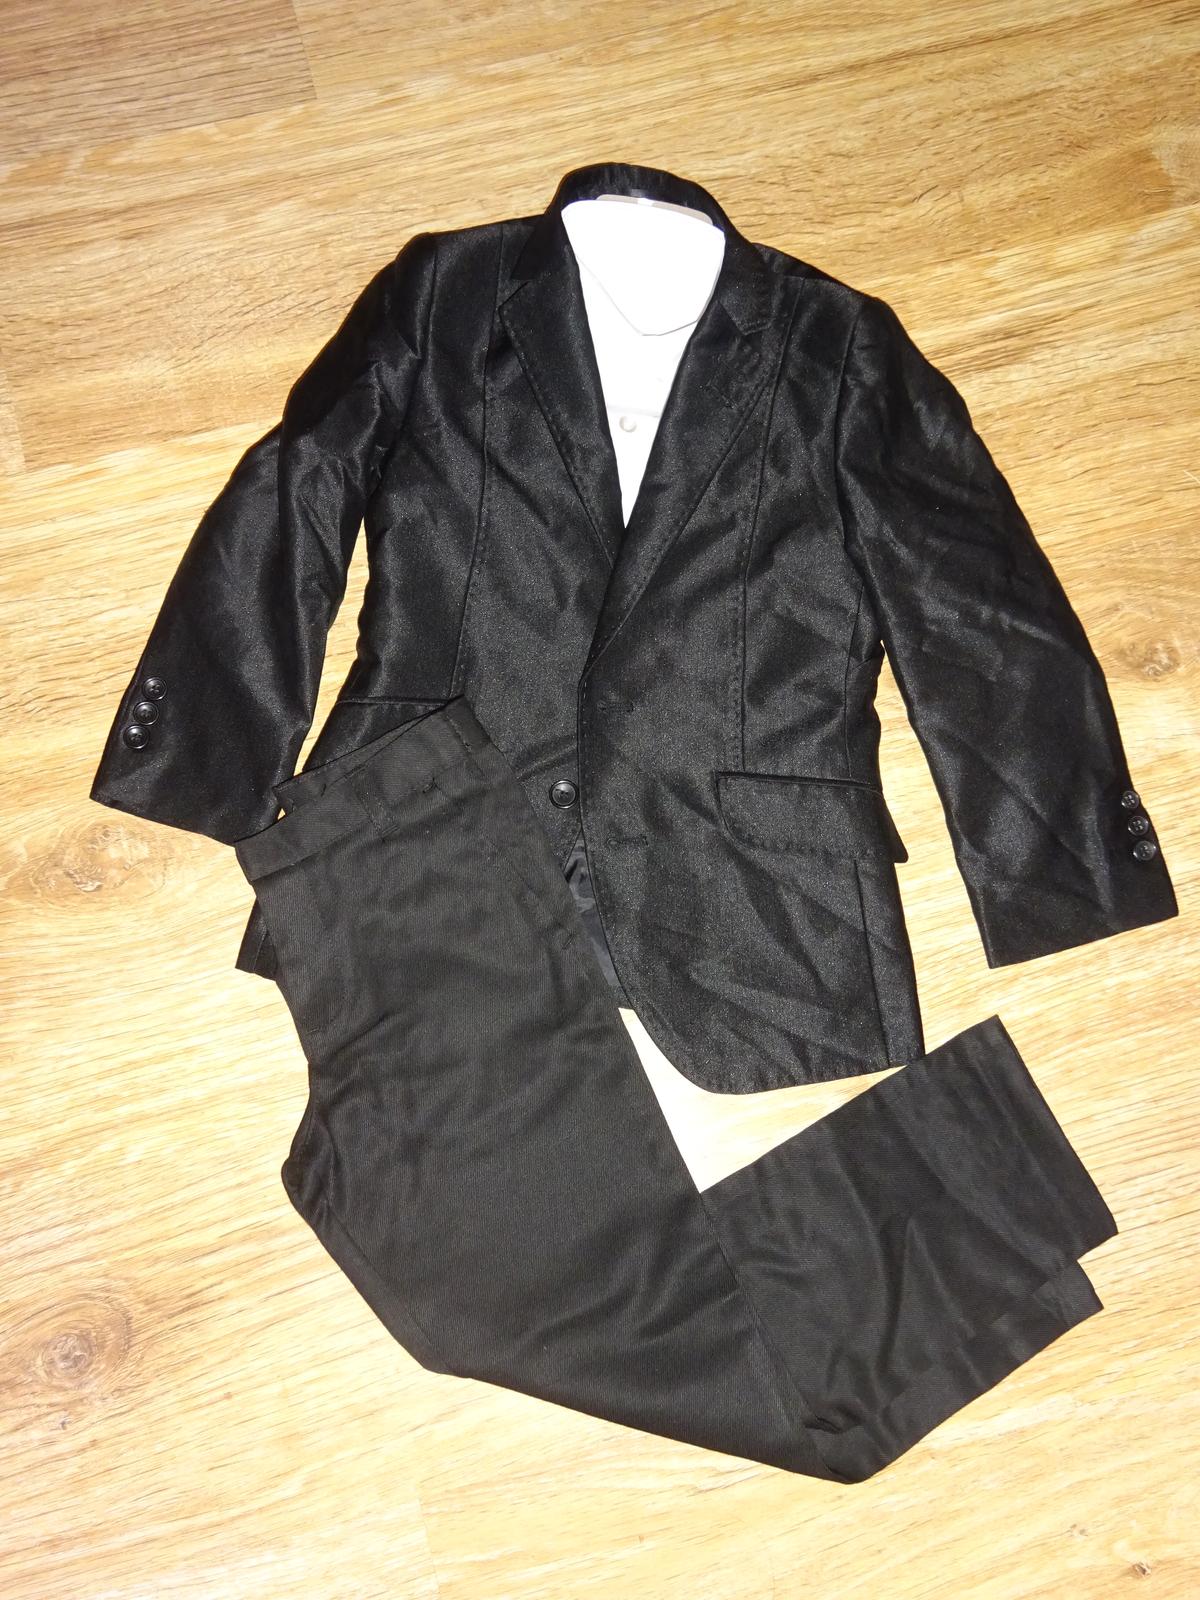 Černý chlapecký oblek s košilí vel. 110 - 116 - Obrázek č. 1